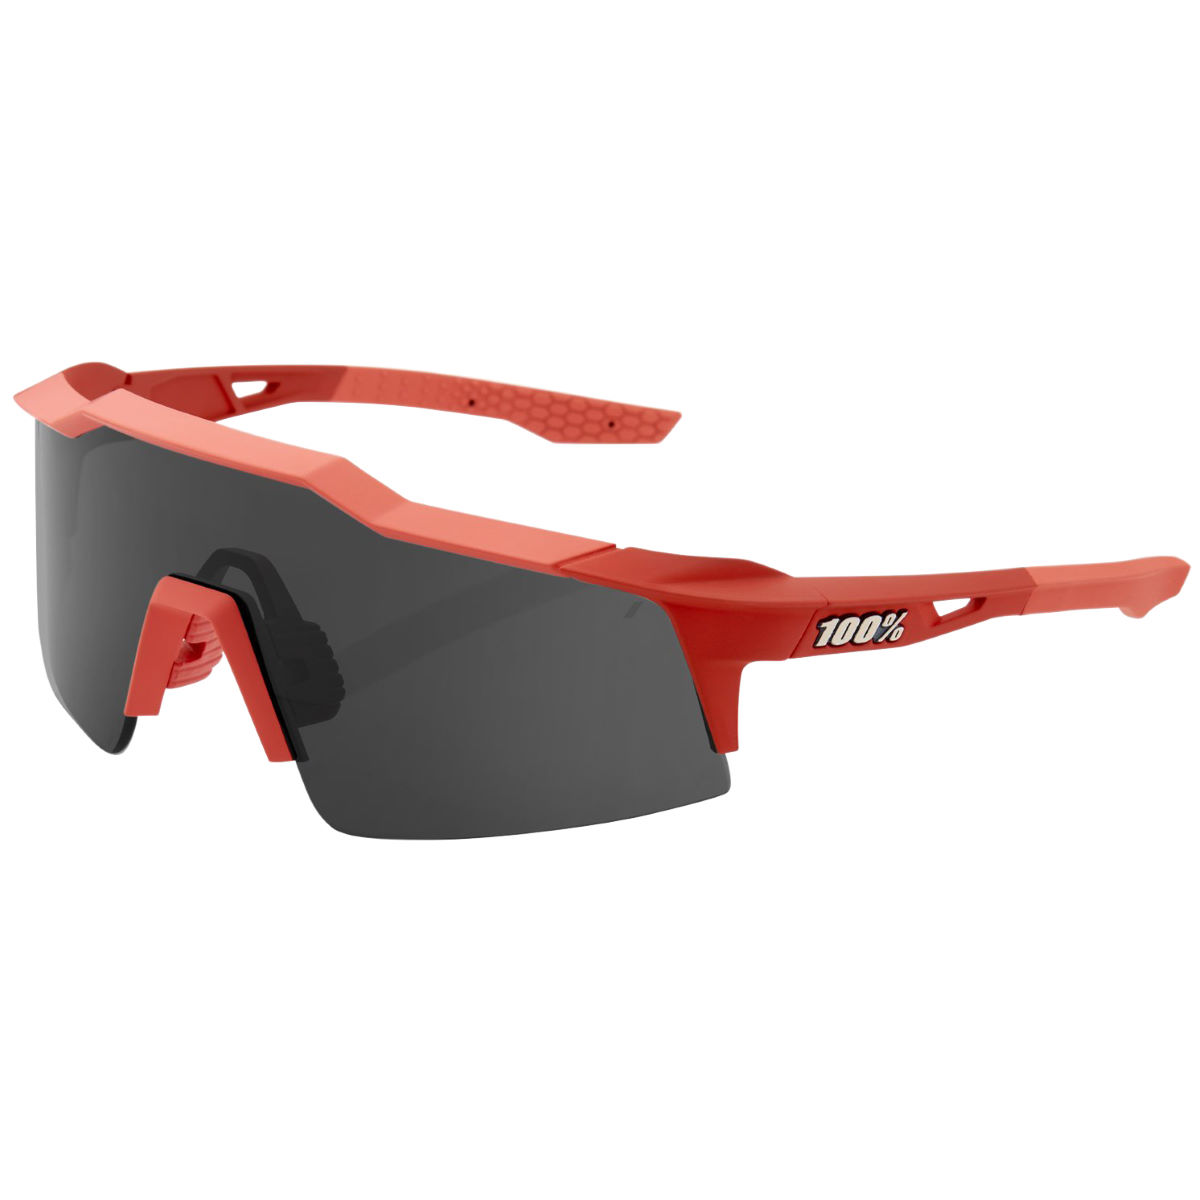 Gafas de sol 100% Speedcraft SL Soft Tact Coral - Gafas de sol